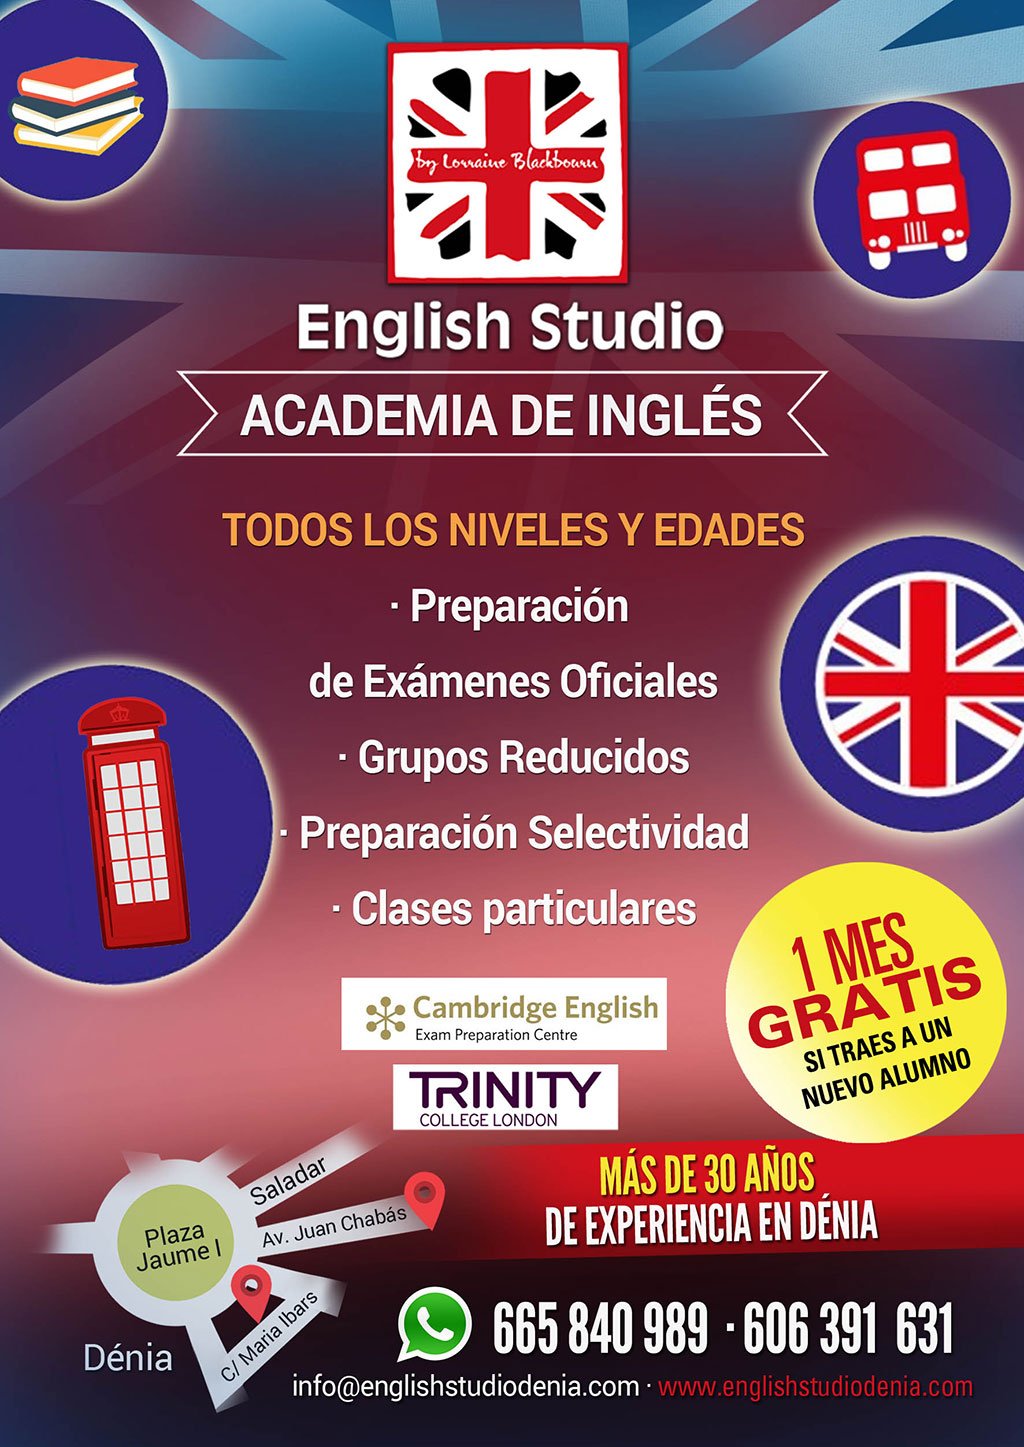 Comienzo de curso y matrícula abierta con oferta de matriculación – English Studio